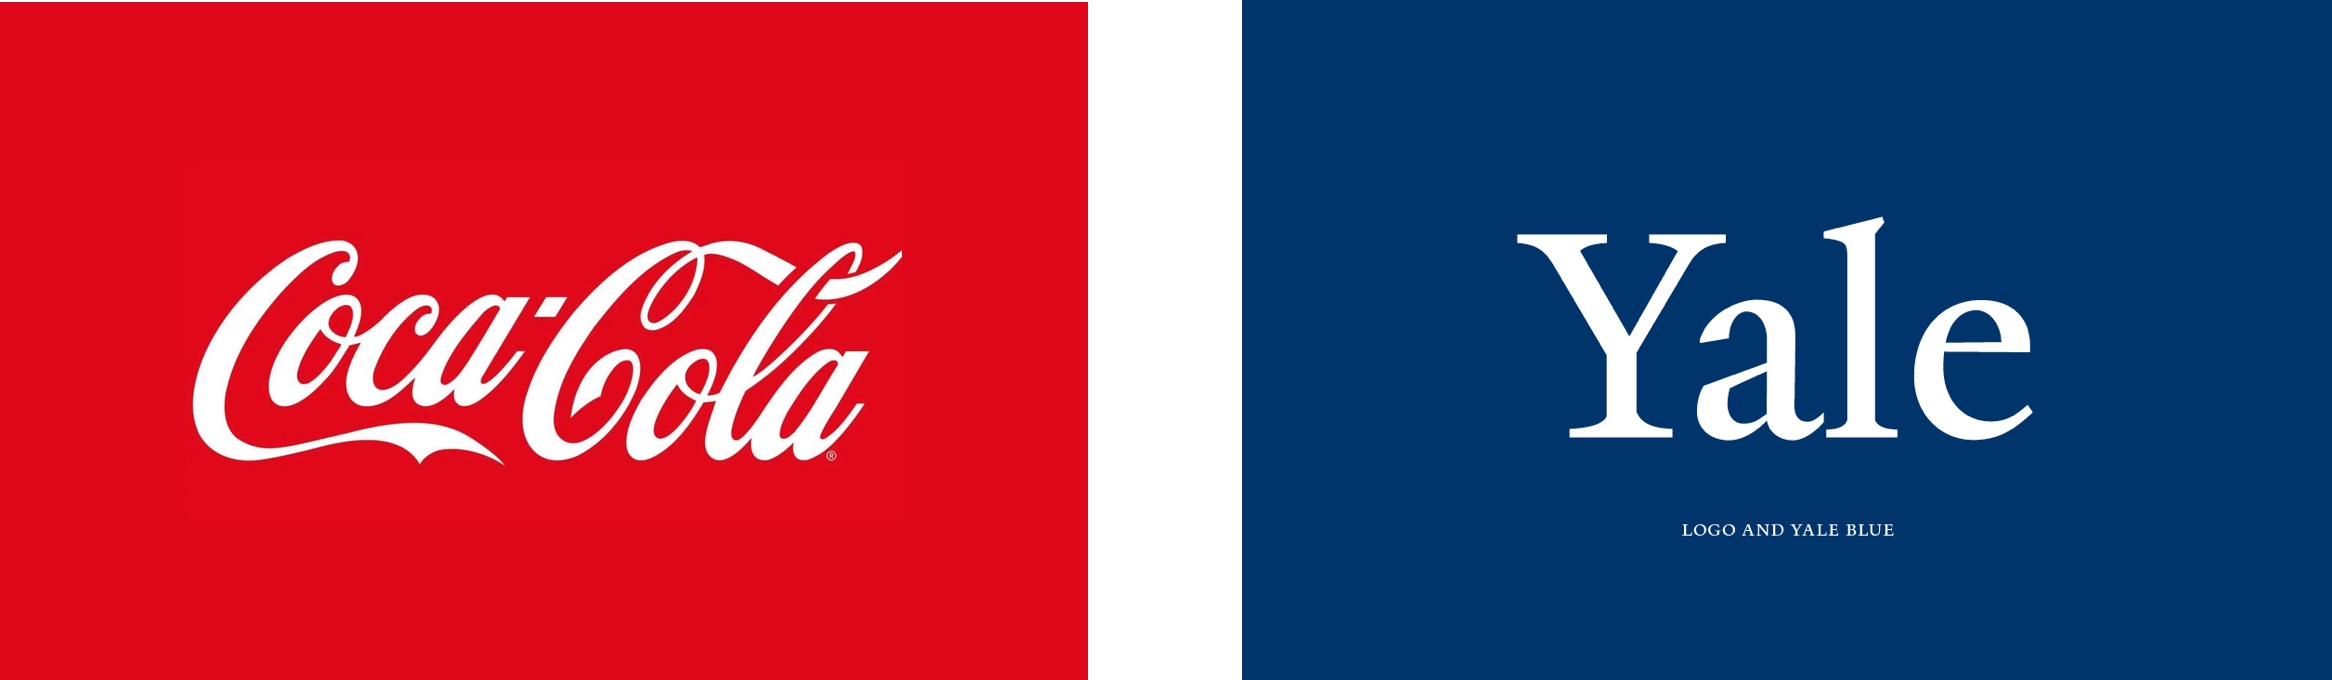 Yale and Coke logos